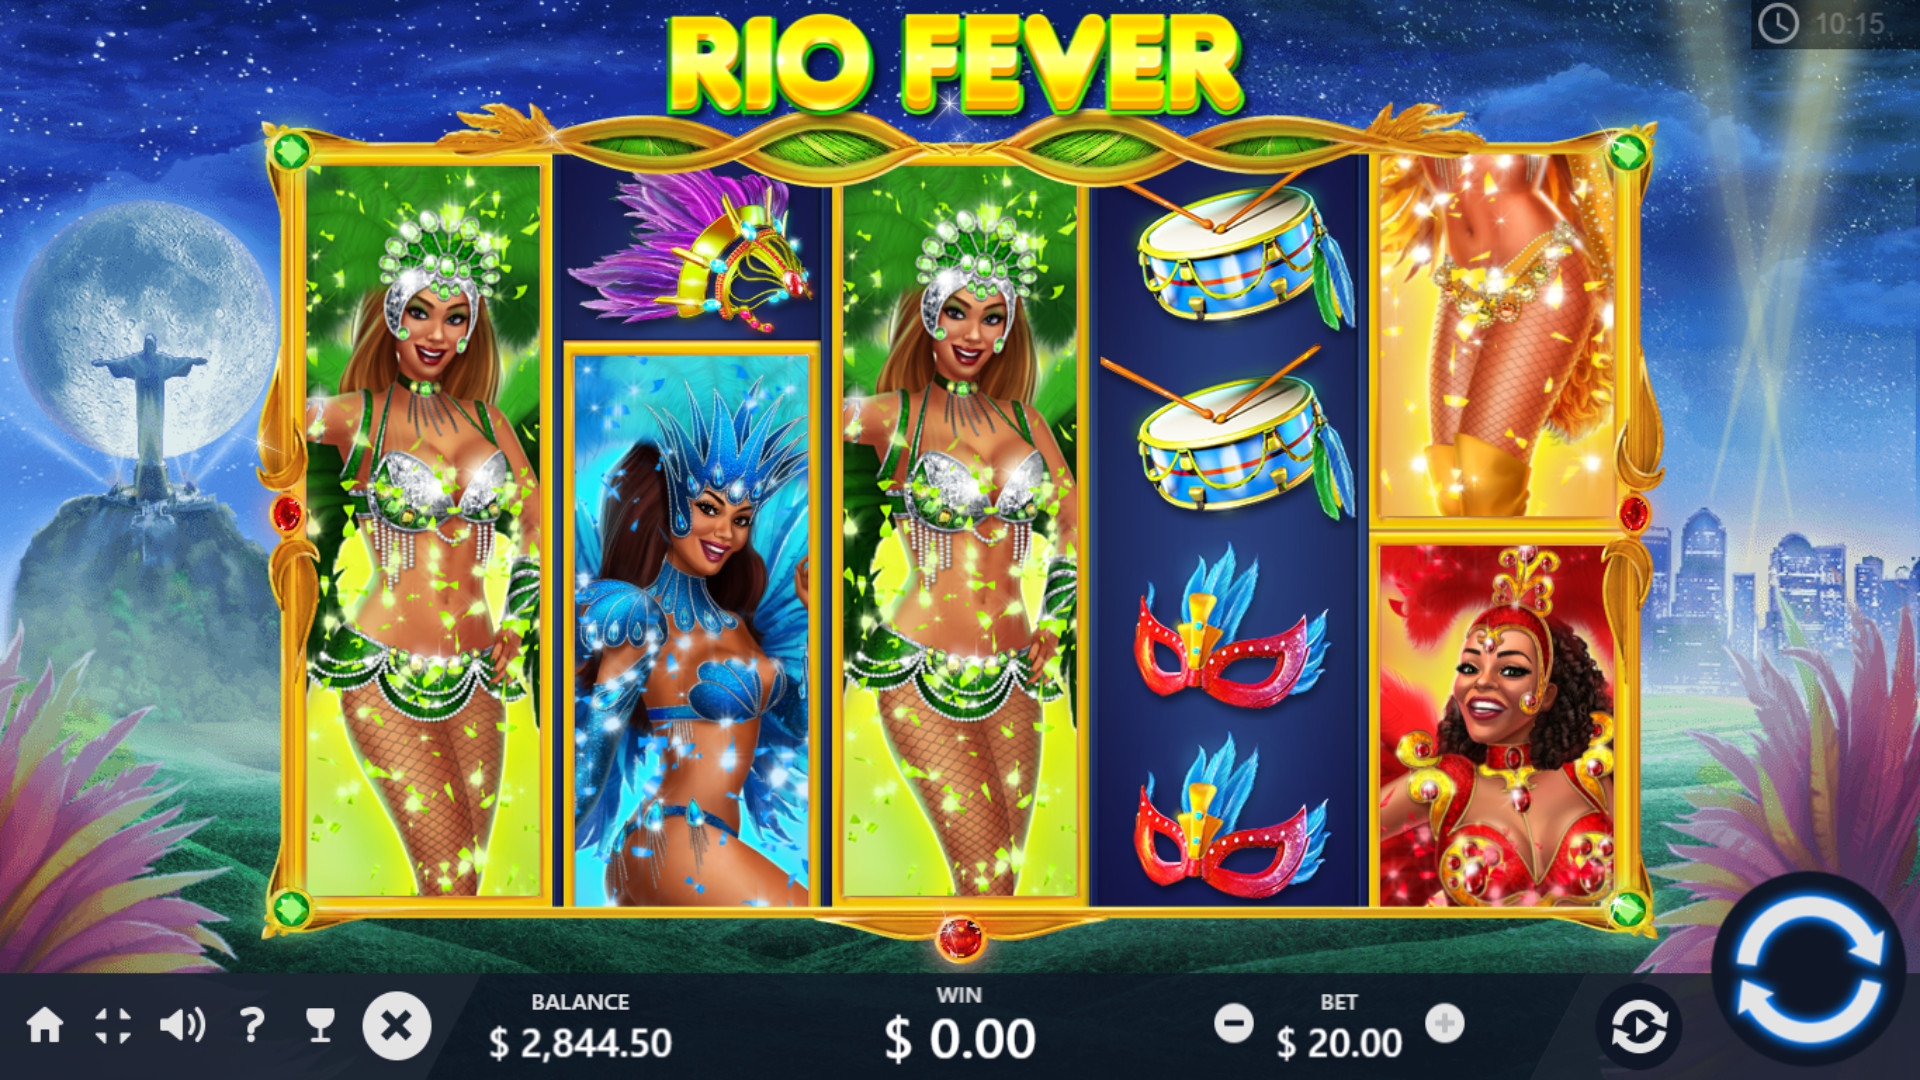 Rio Fever (Rio Fever) from category Slots